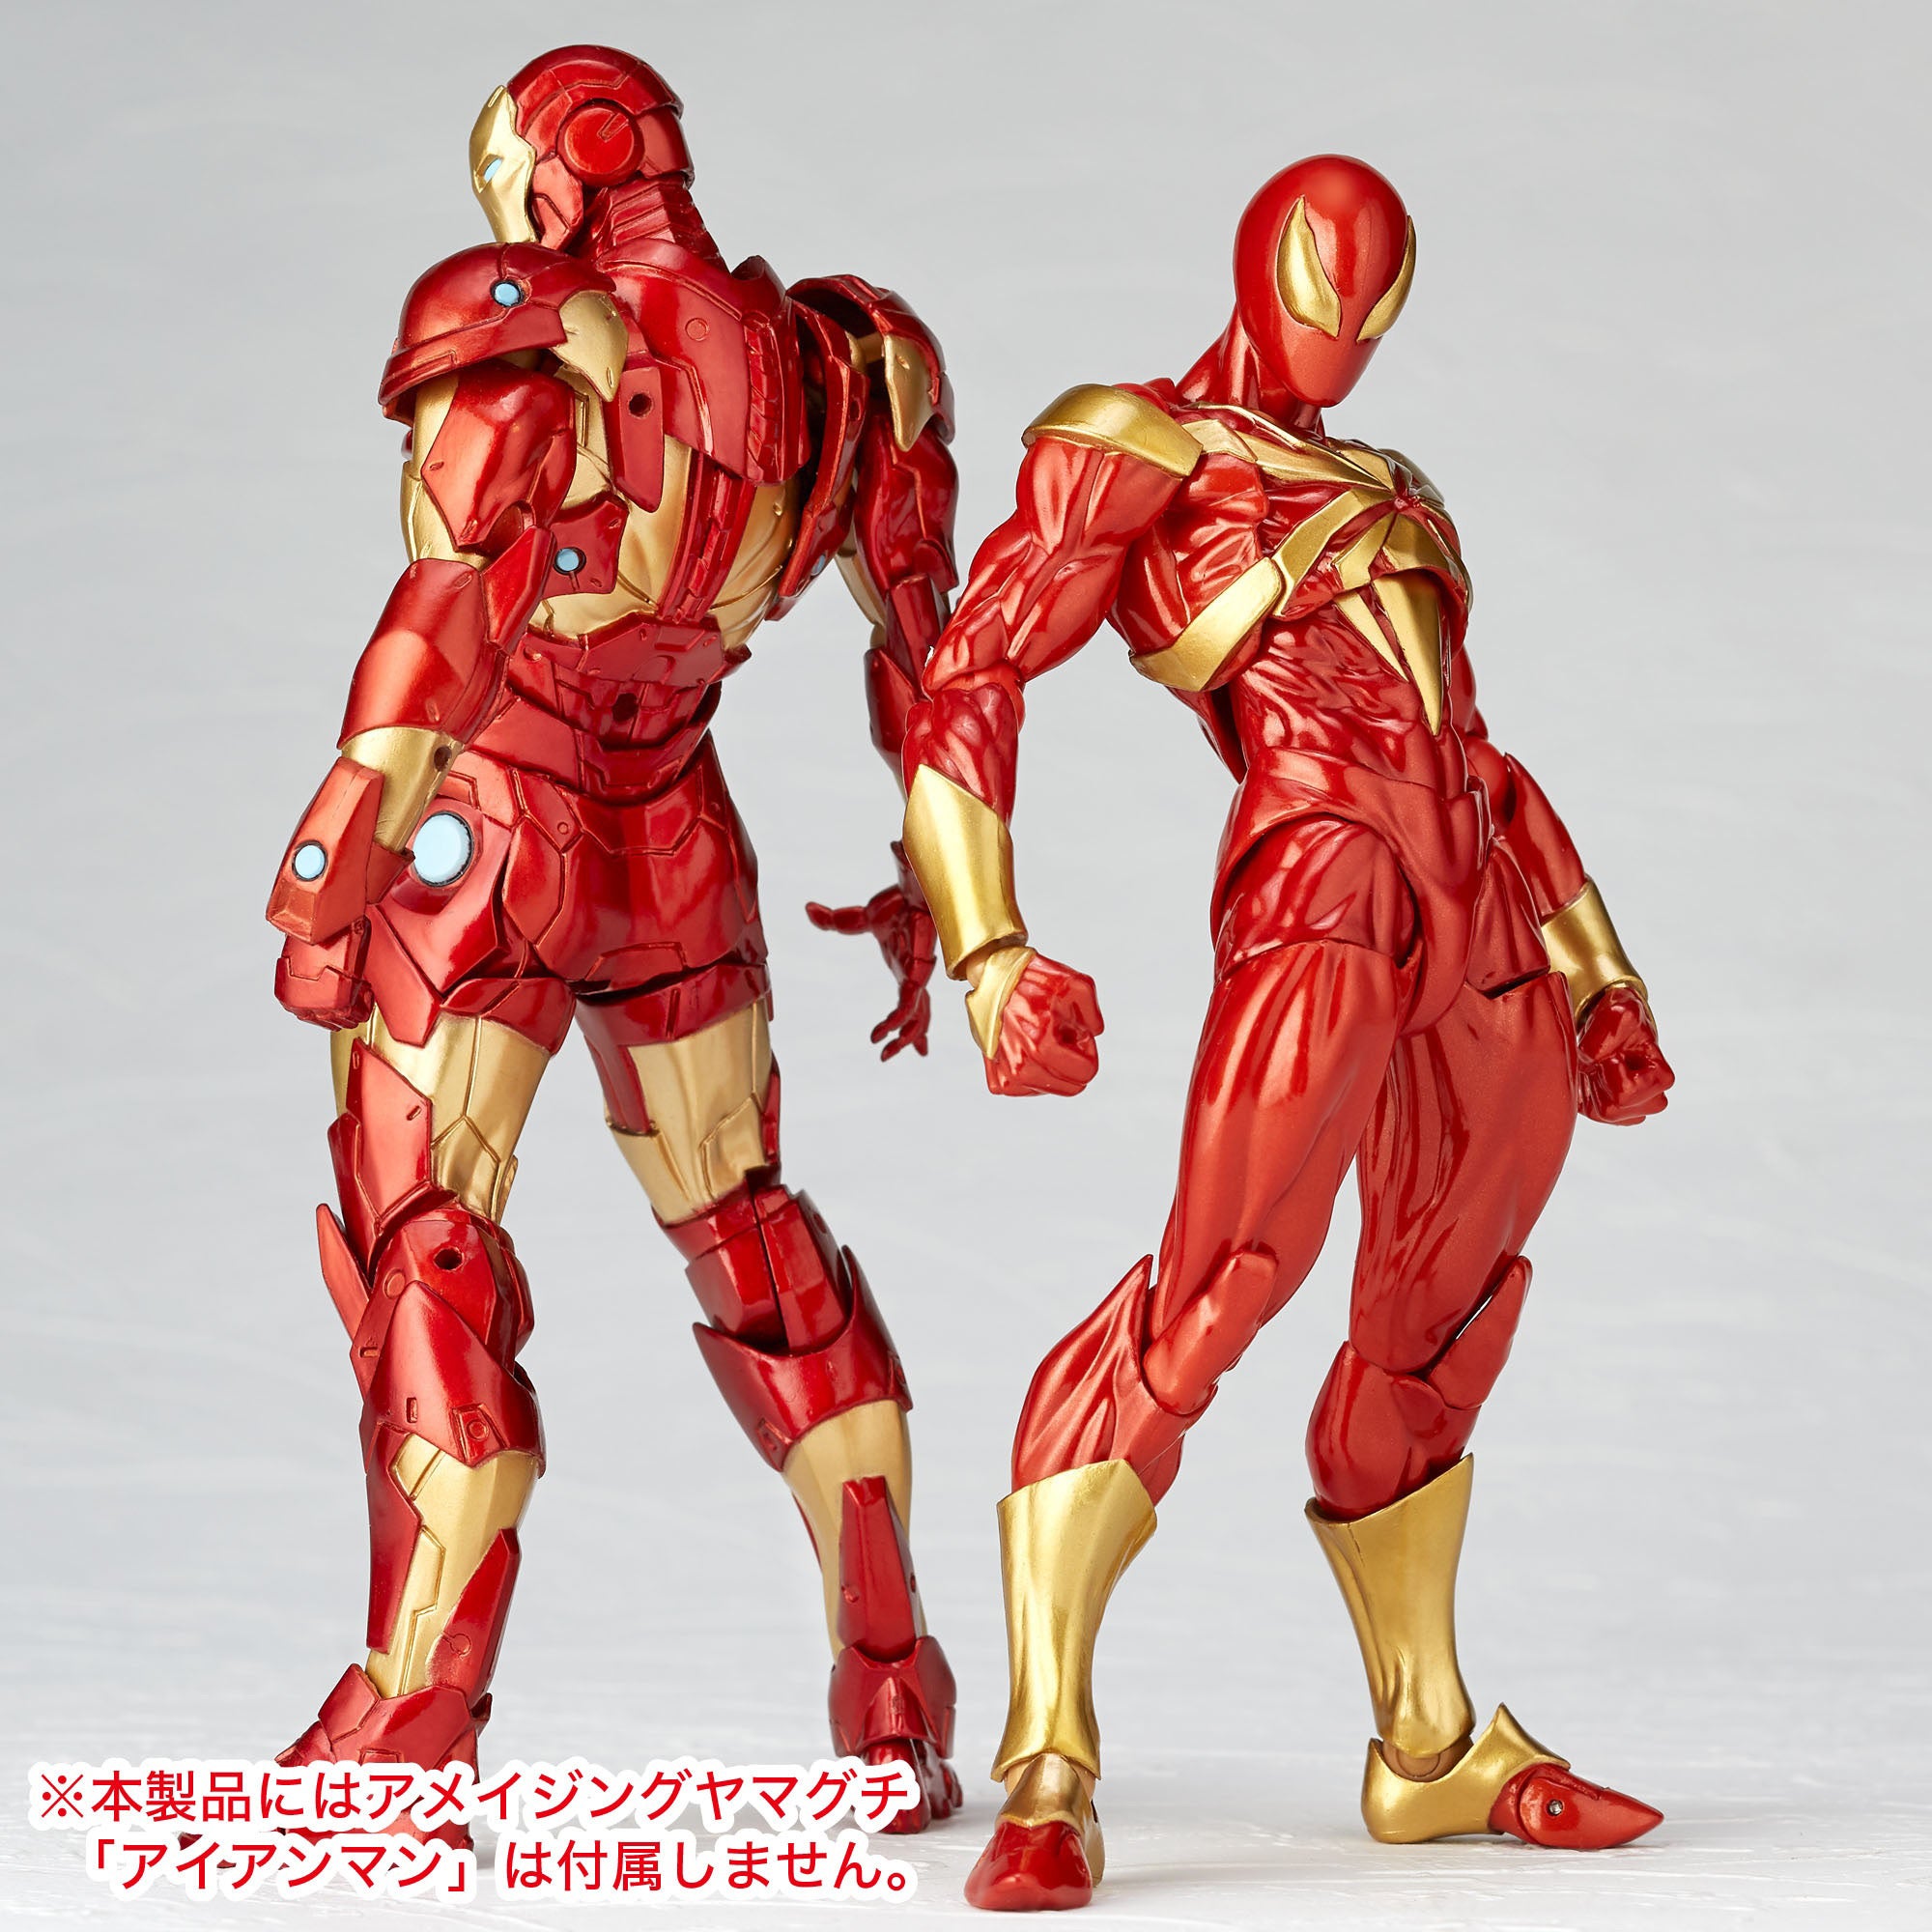 Kaiyodo - Revoltech - Amazing Yamaguchi No. 023 - Marvel - Iron Spider (Reissue) - Marvelous Toys